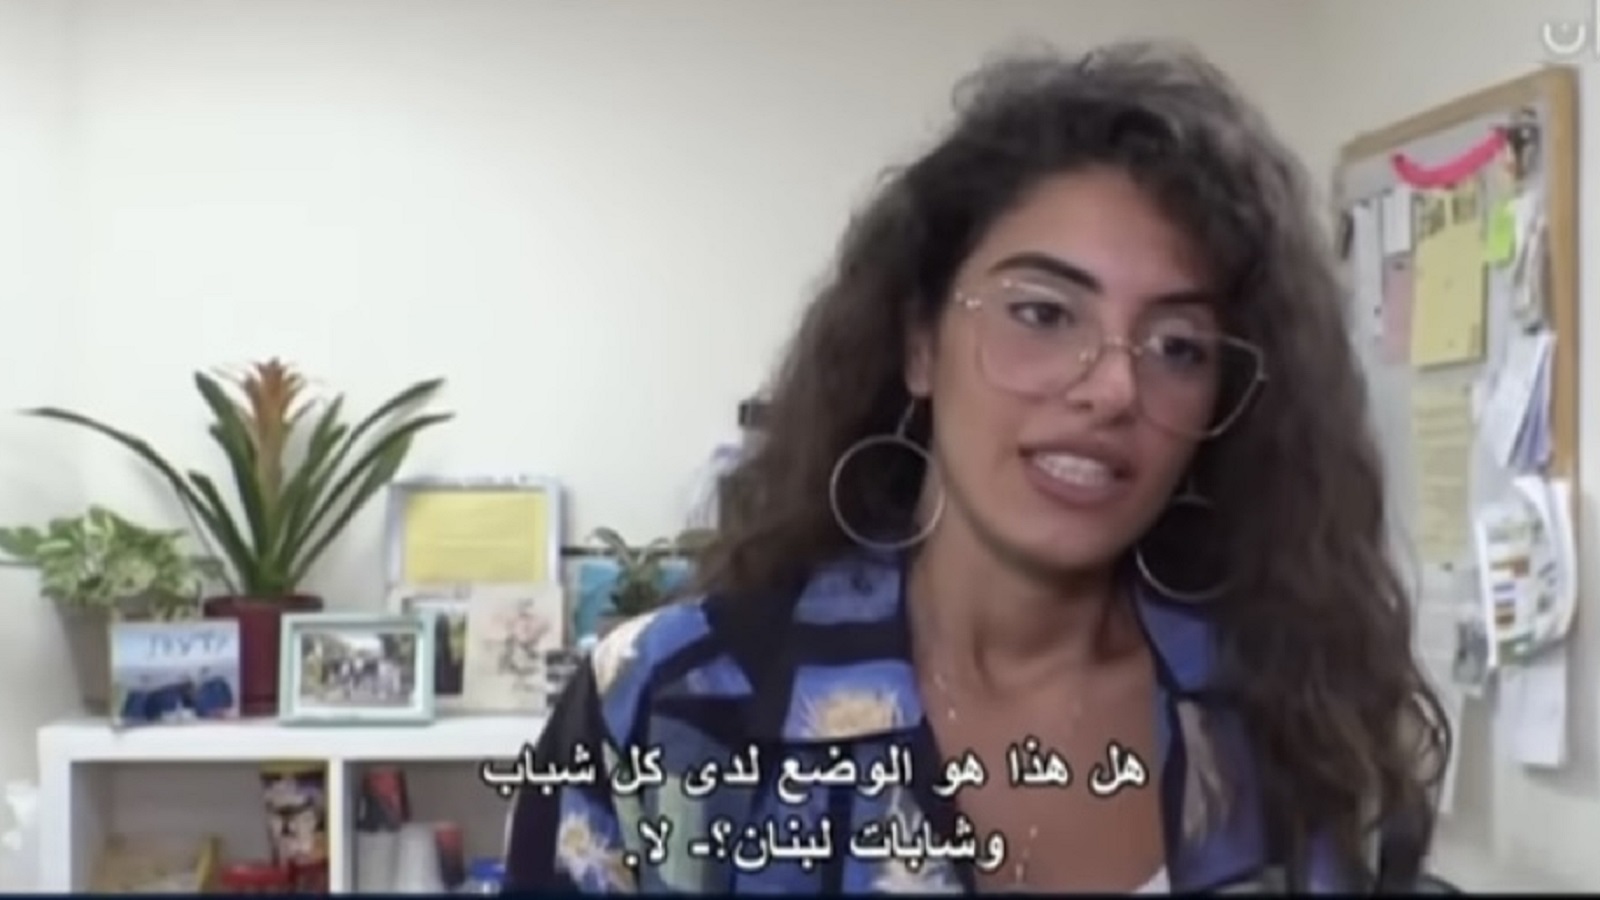 غراسيا حاصباني ناشطة معروفة في مستوطنة كريات شمونة (من فيديو قناة مكان)